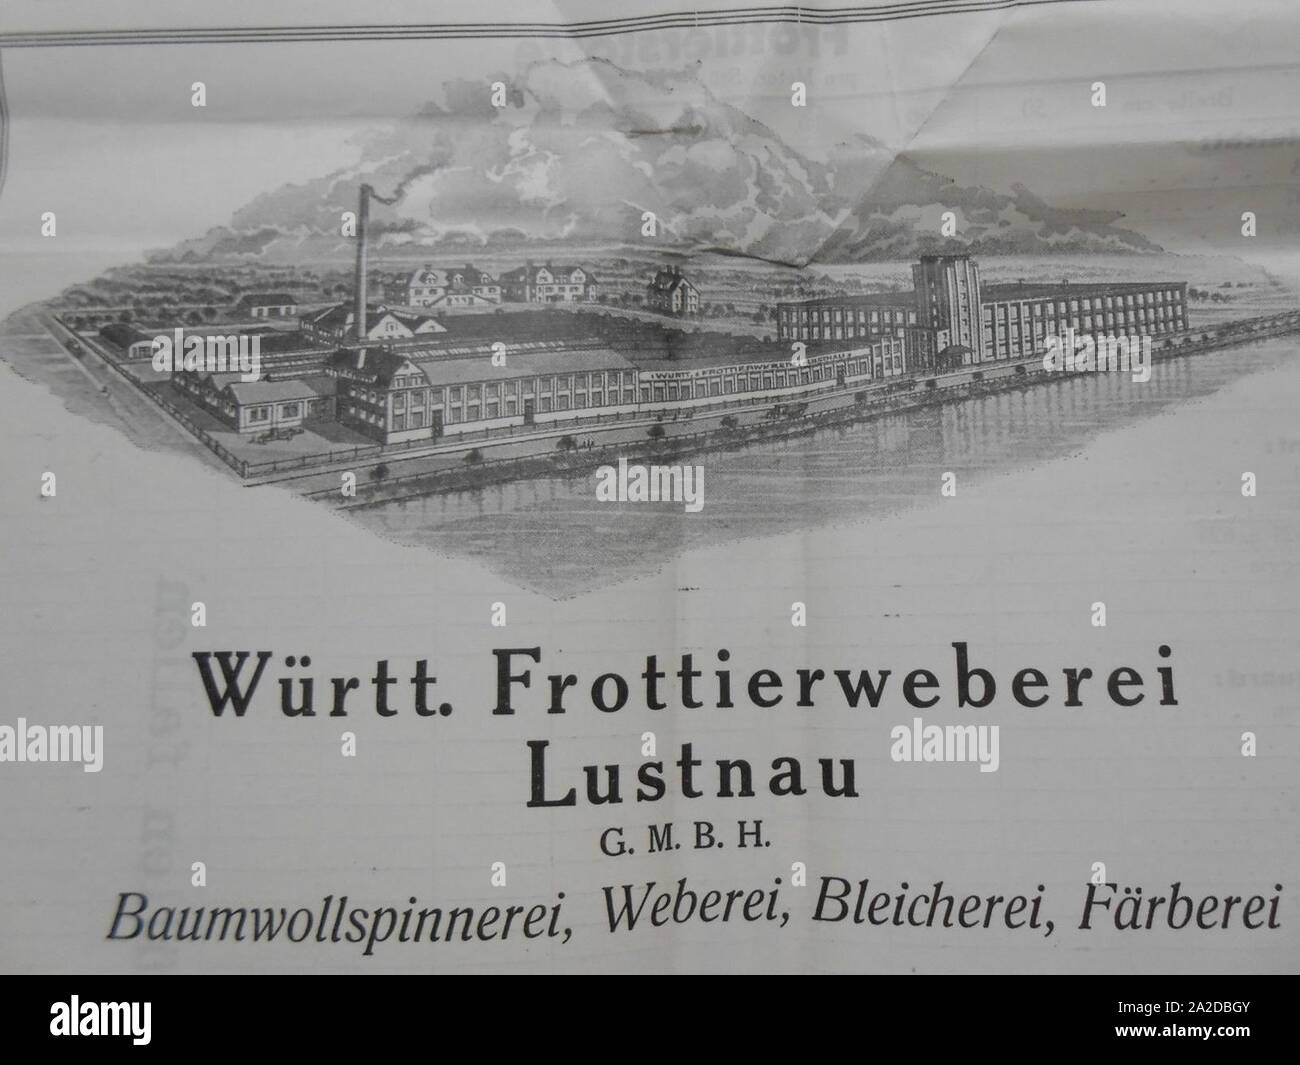 Egeria Württembergische Frottierweberei Stich aus Rechnung vor1933. Stock Photo